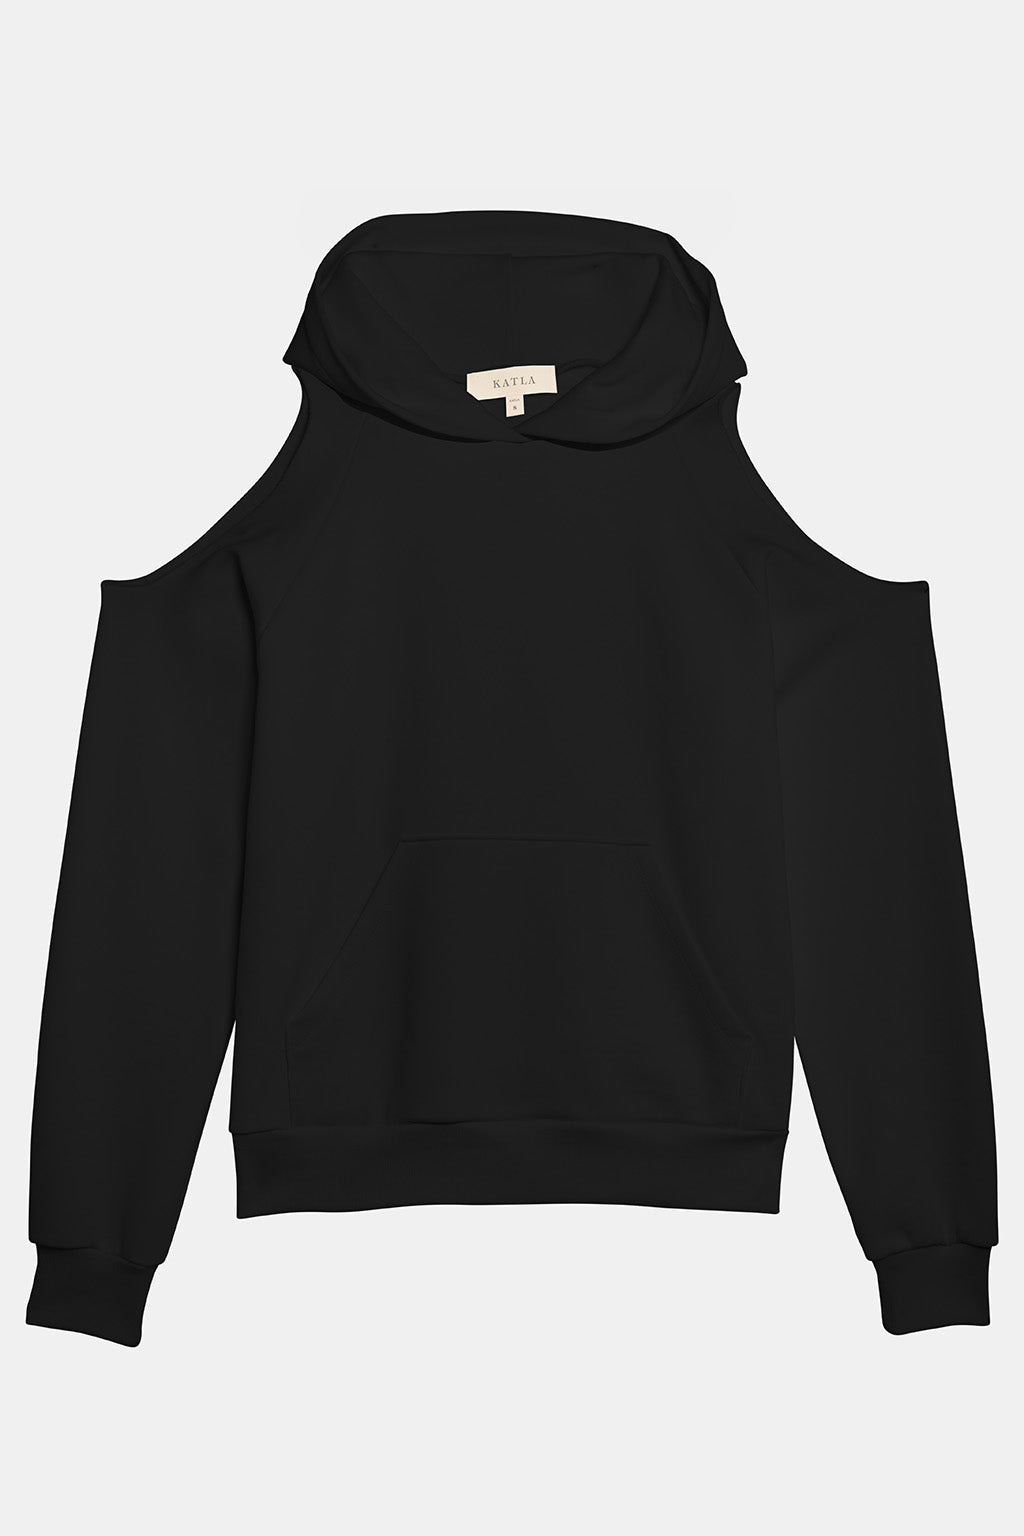 cut out black hoodie